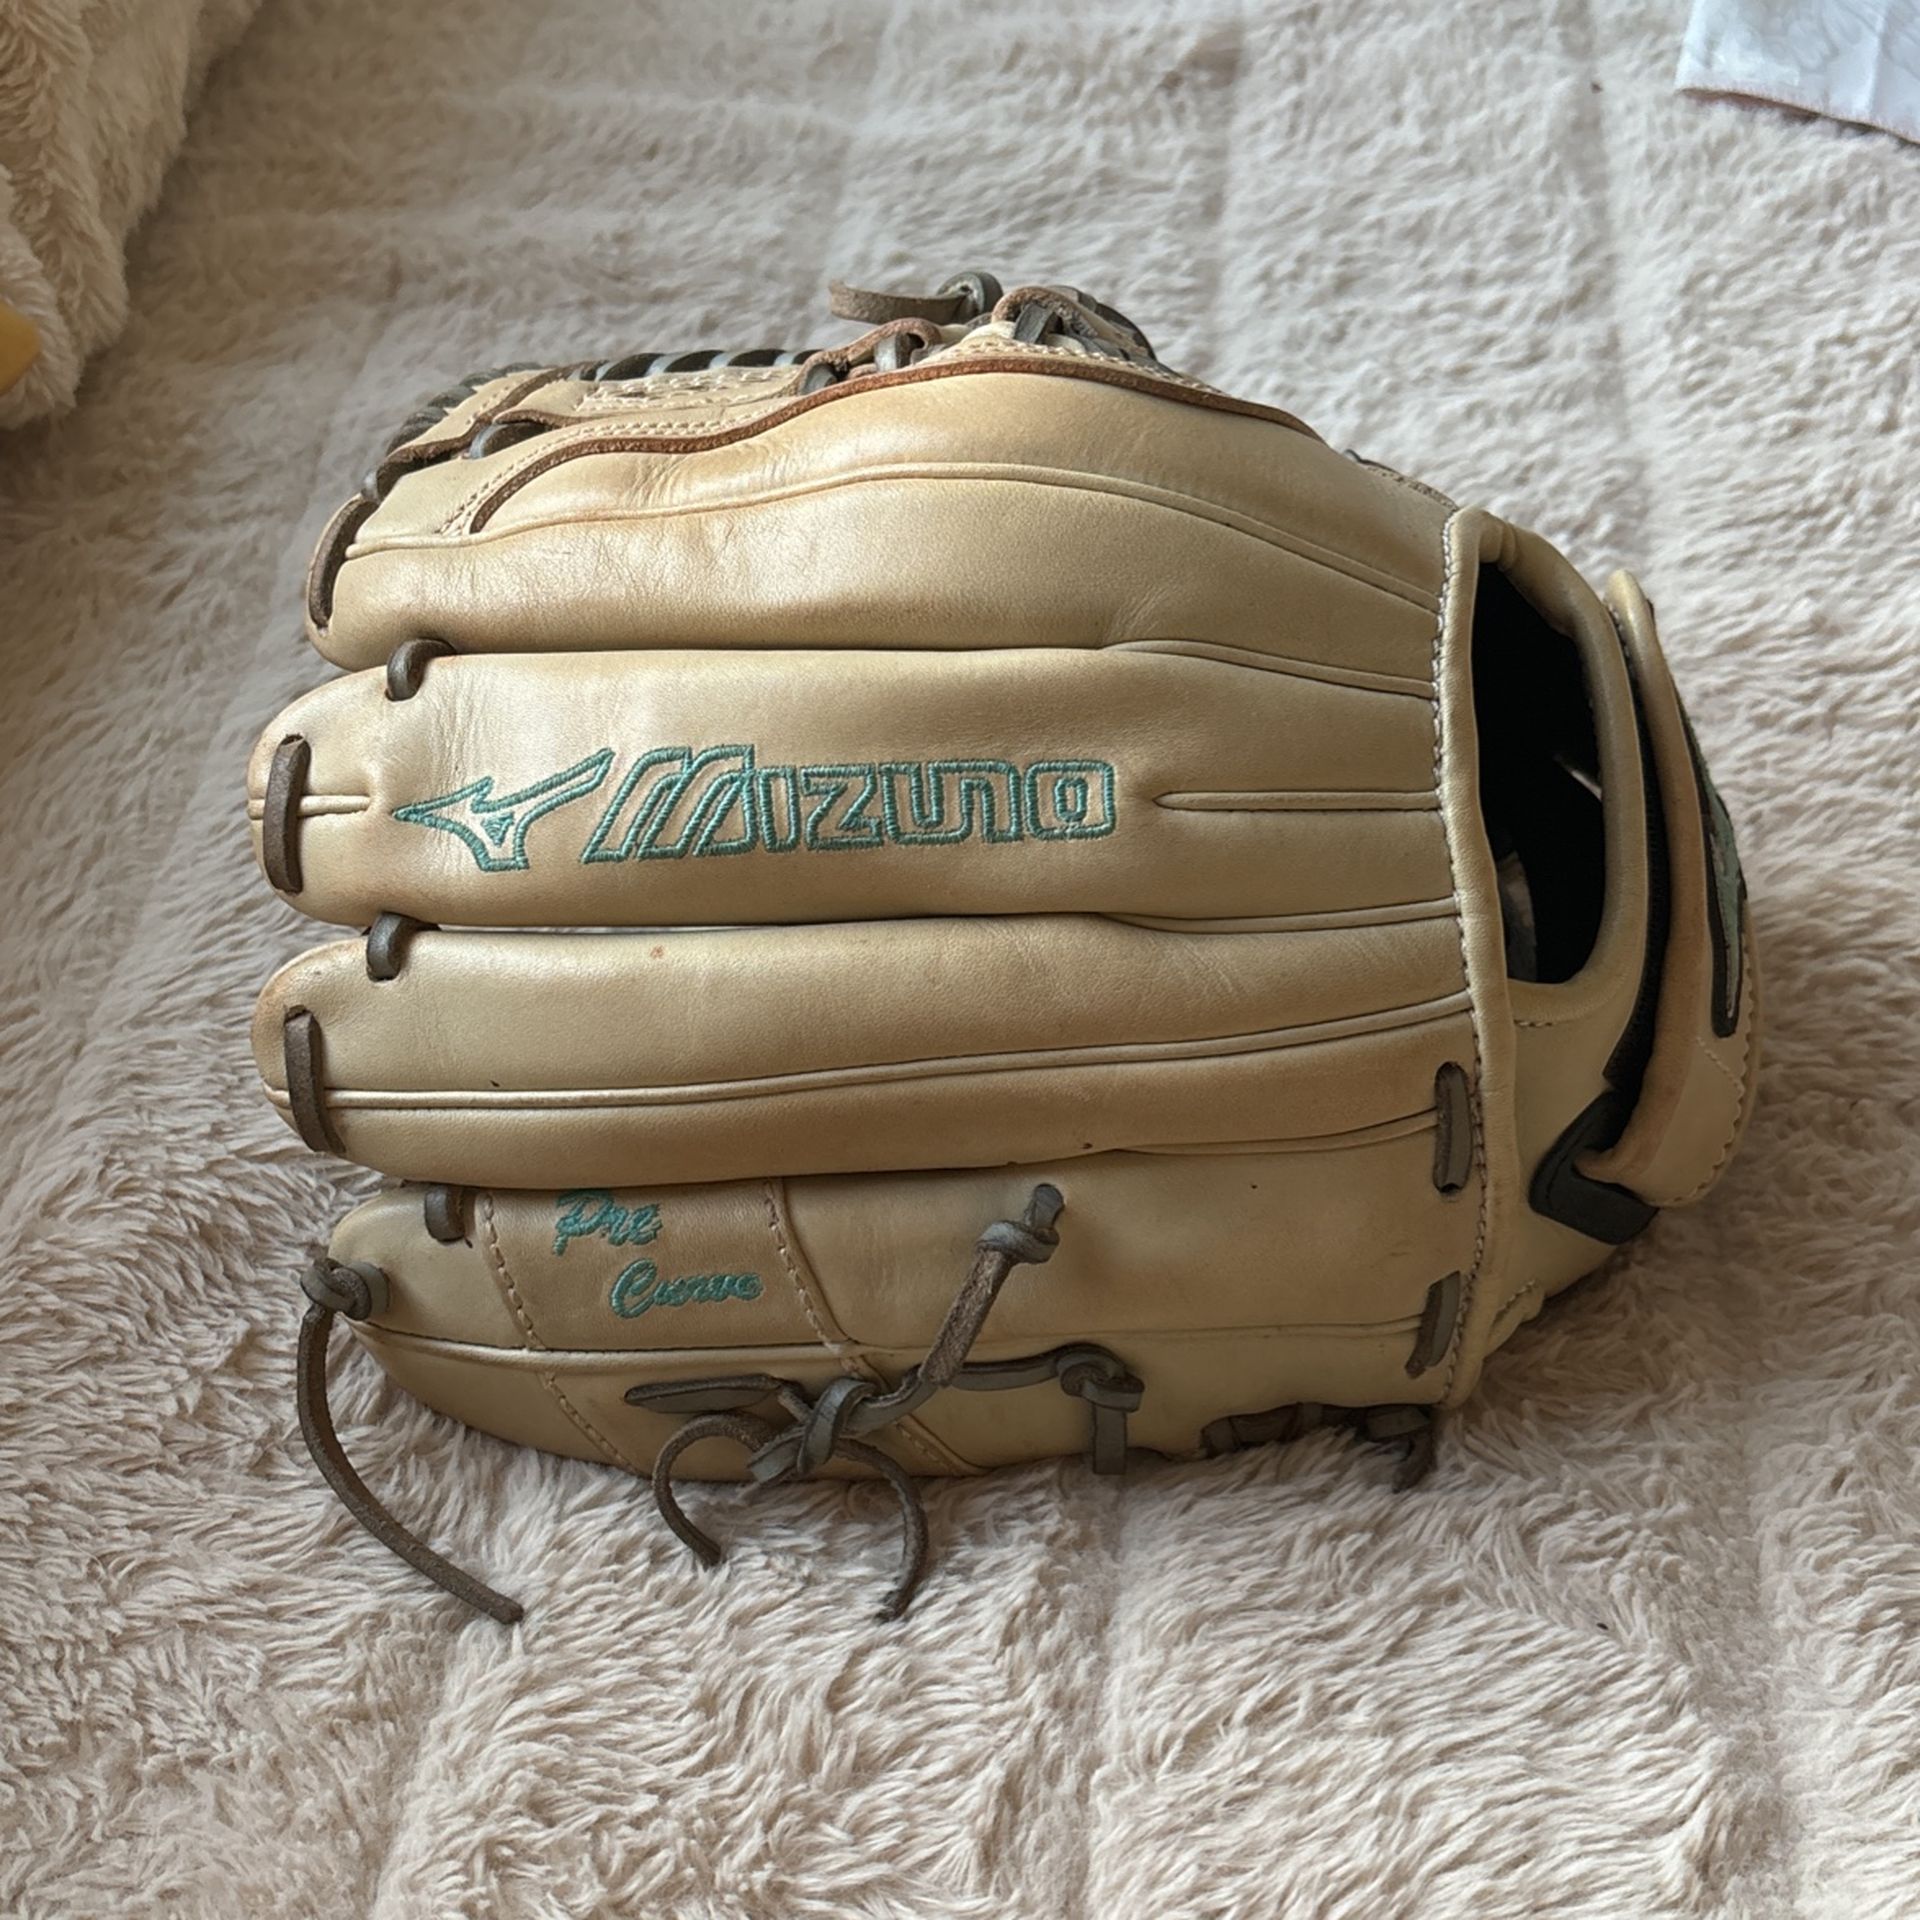 outfirlder softball glove 